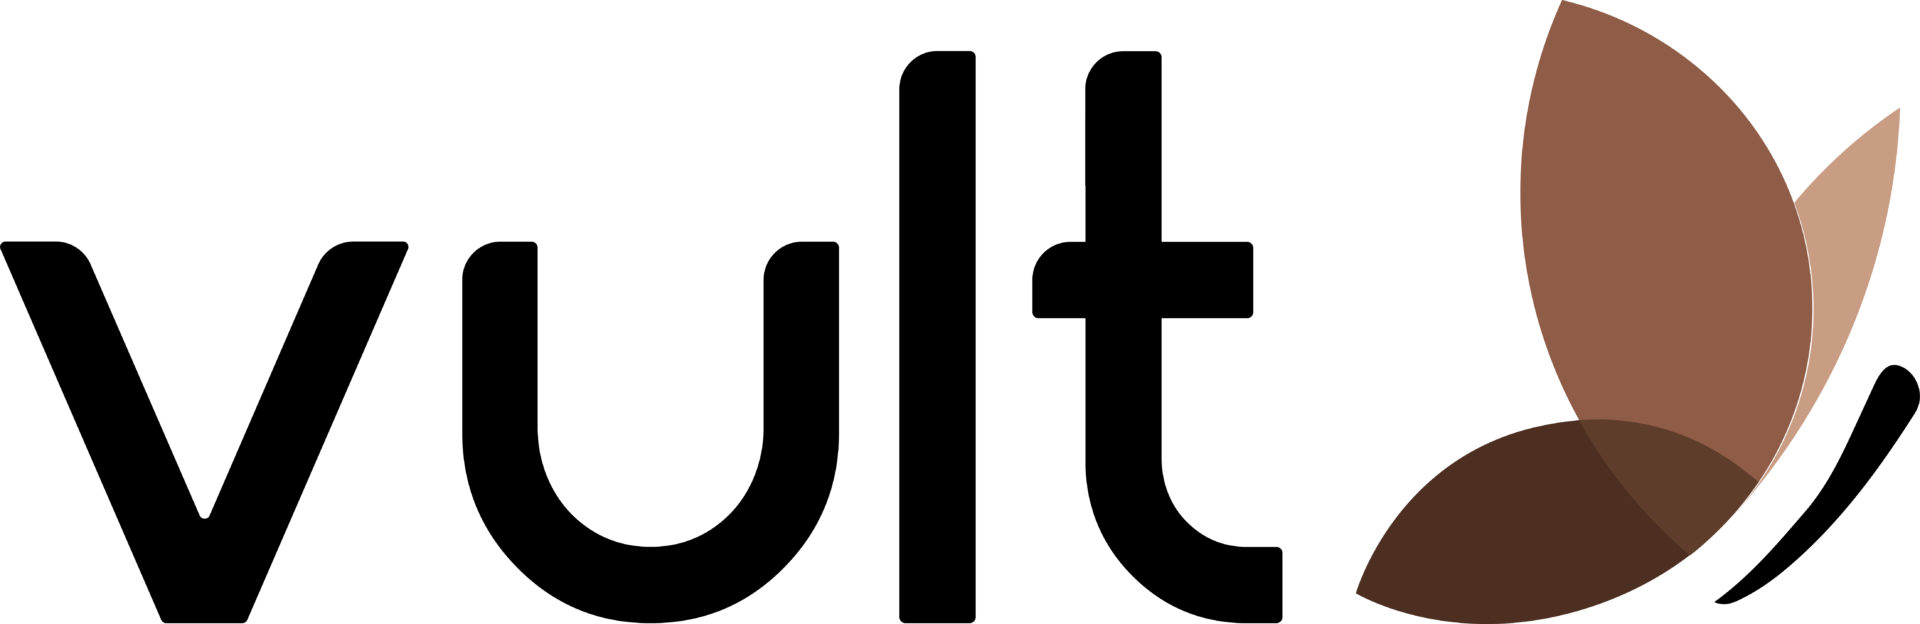 Logo Vult - com borboleta em tons de marrom